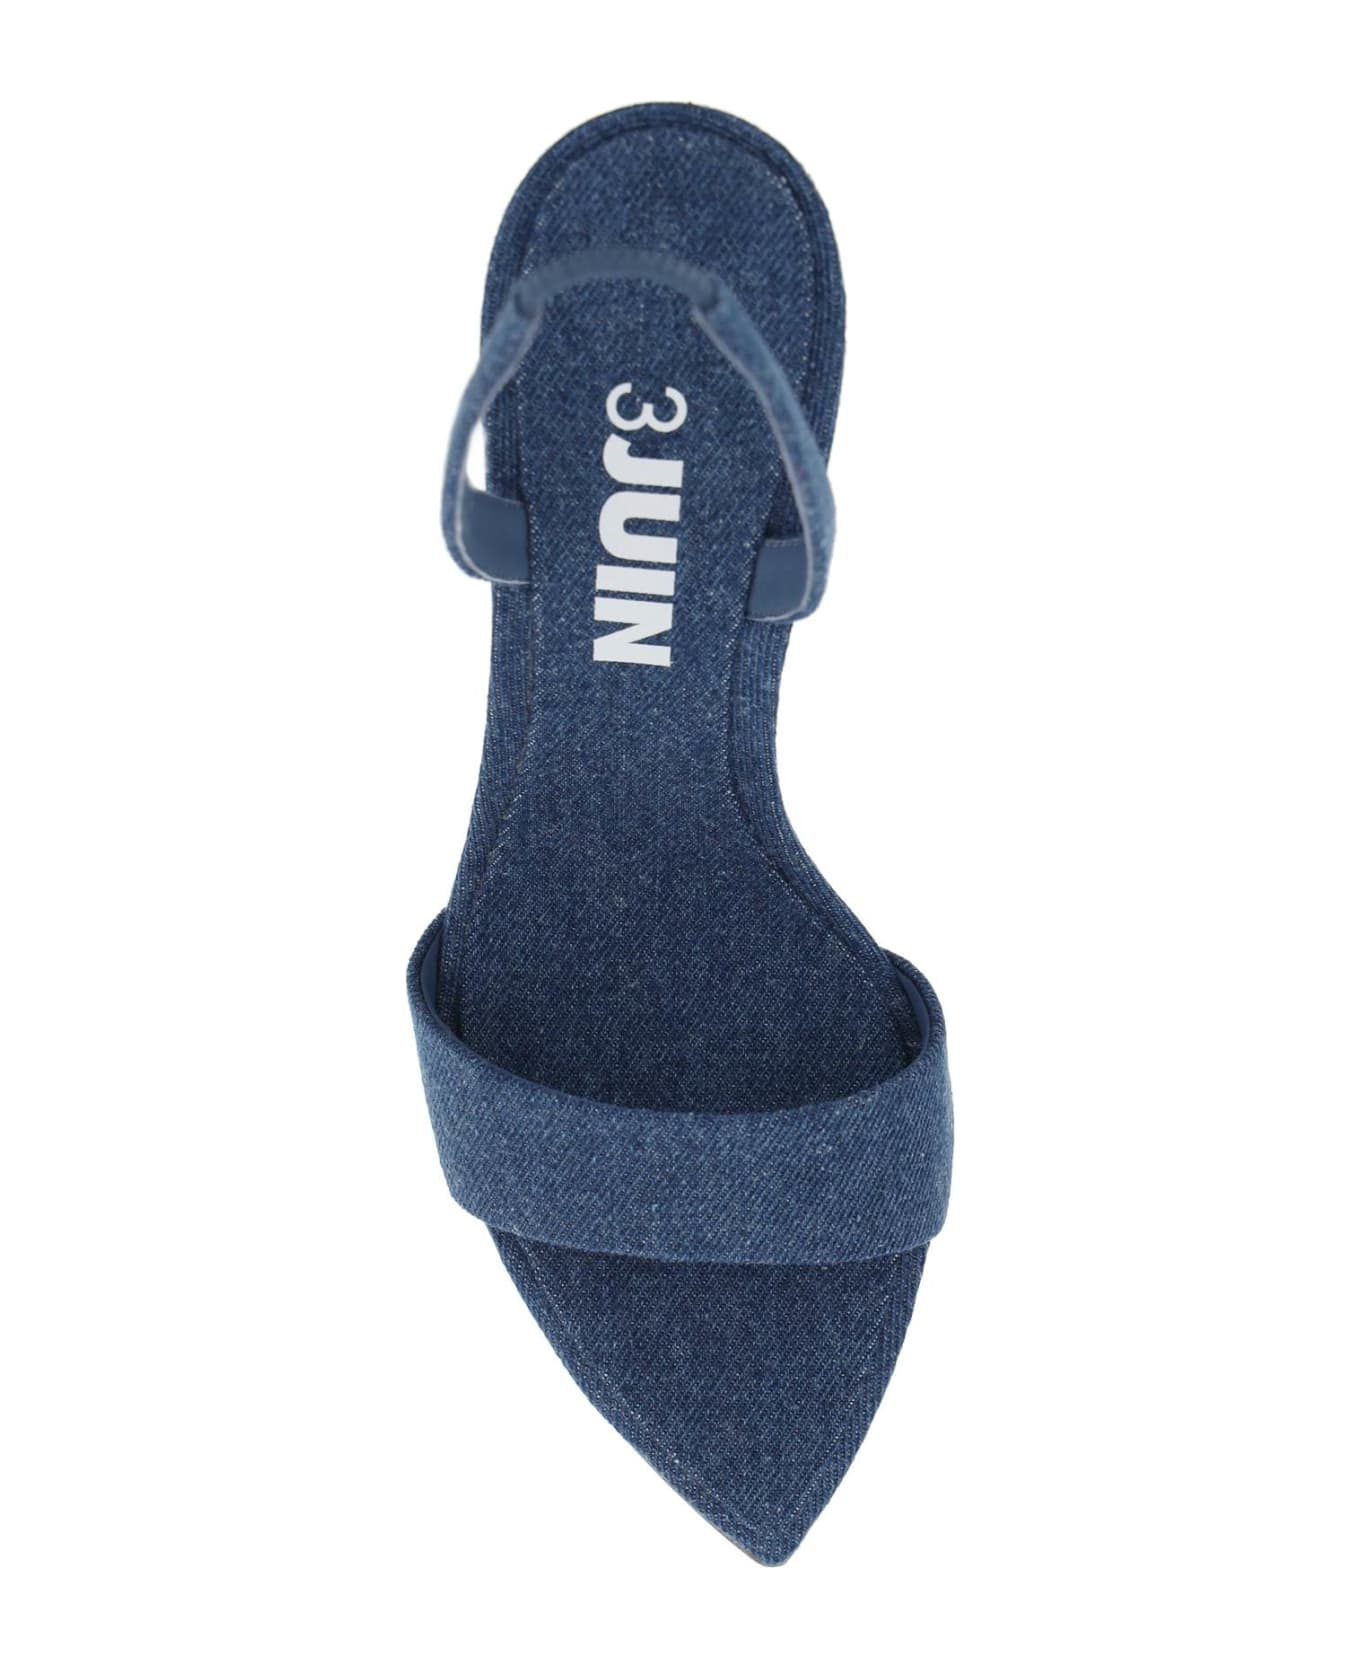 3JUIN 'lily' Sandals - BLUE (Blue)